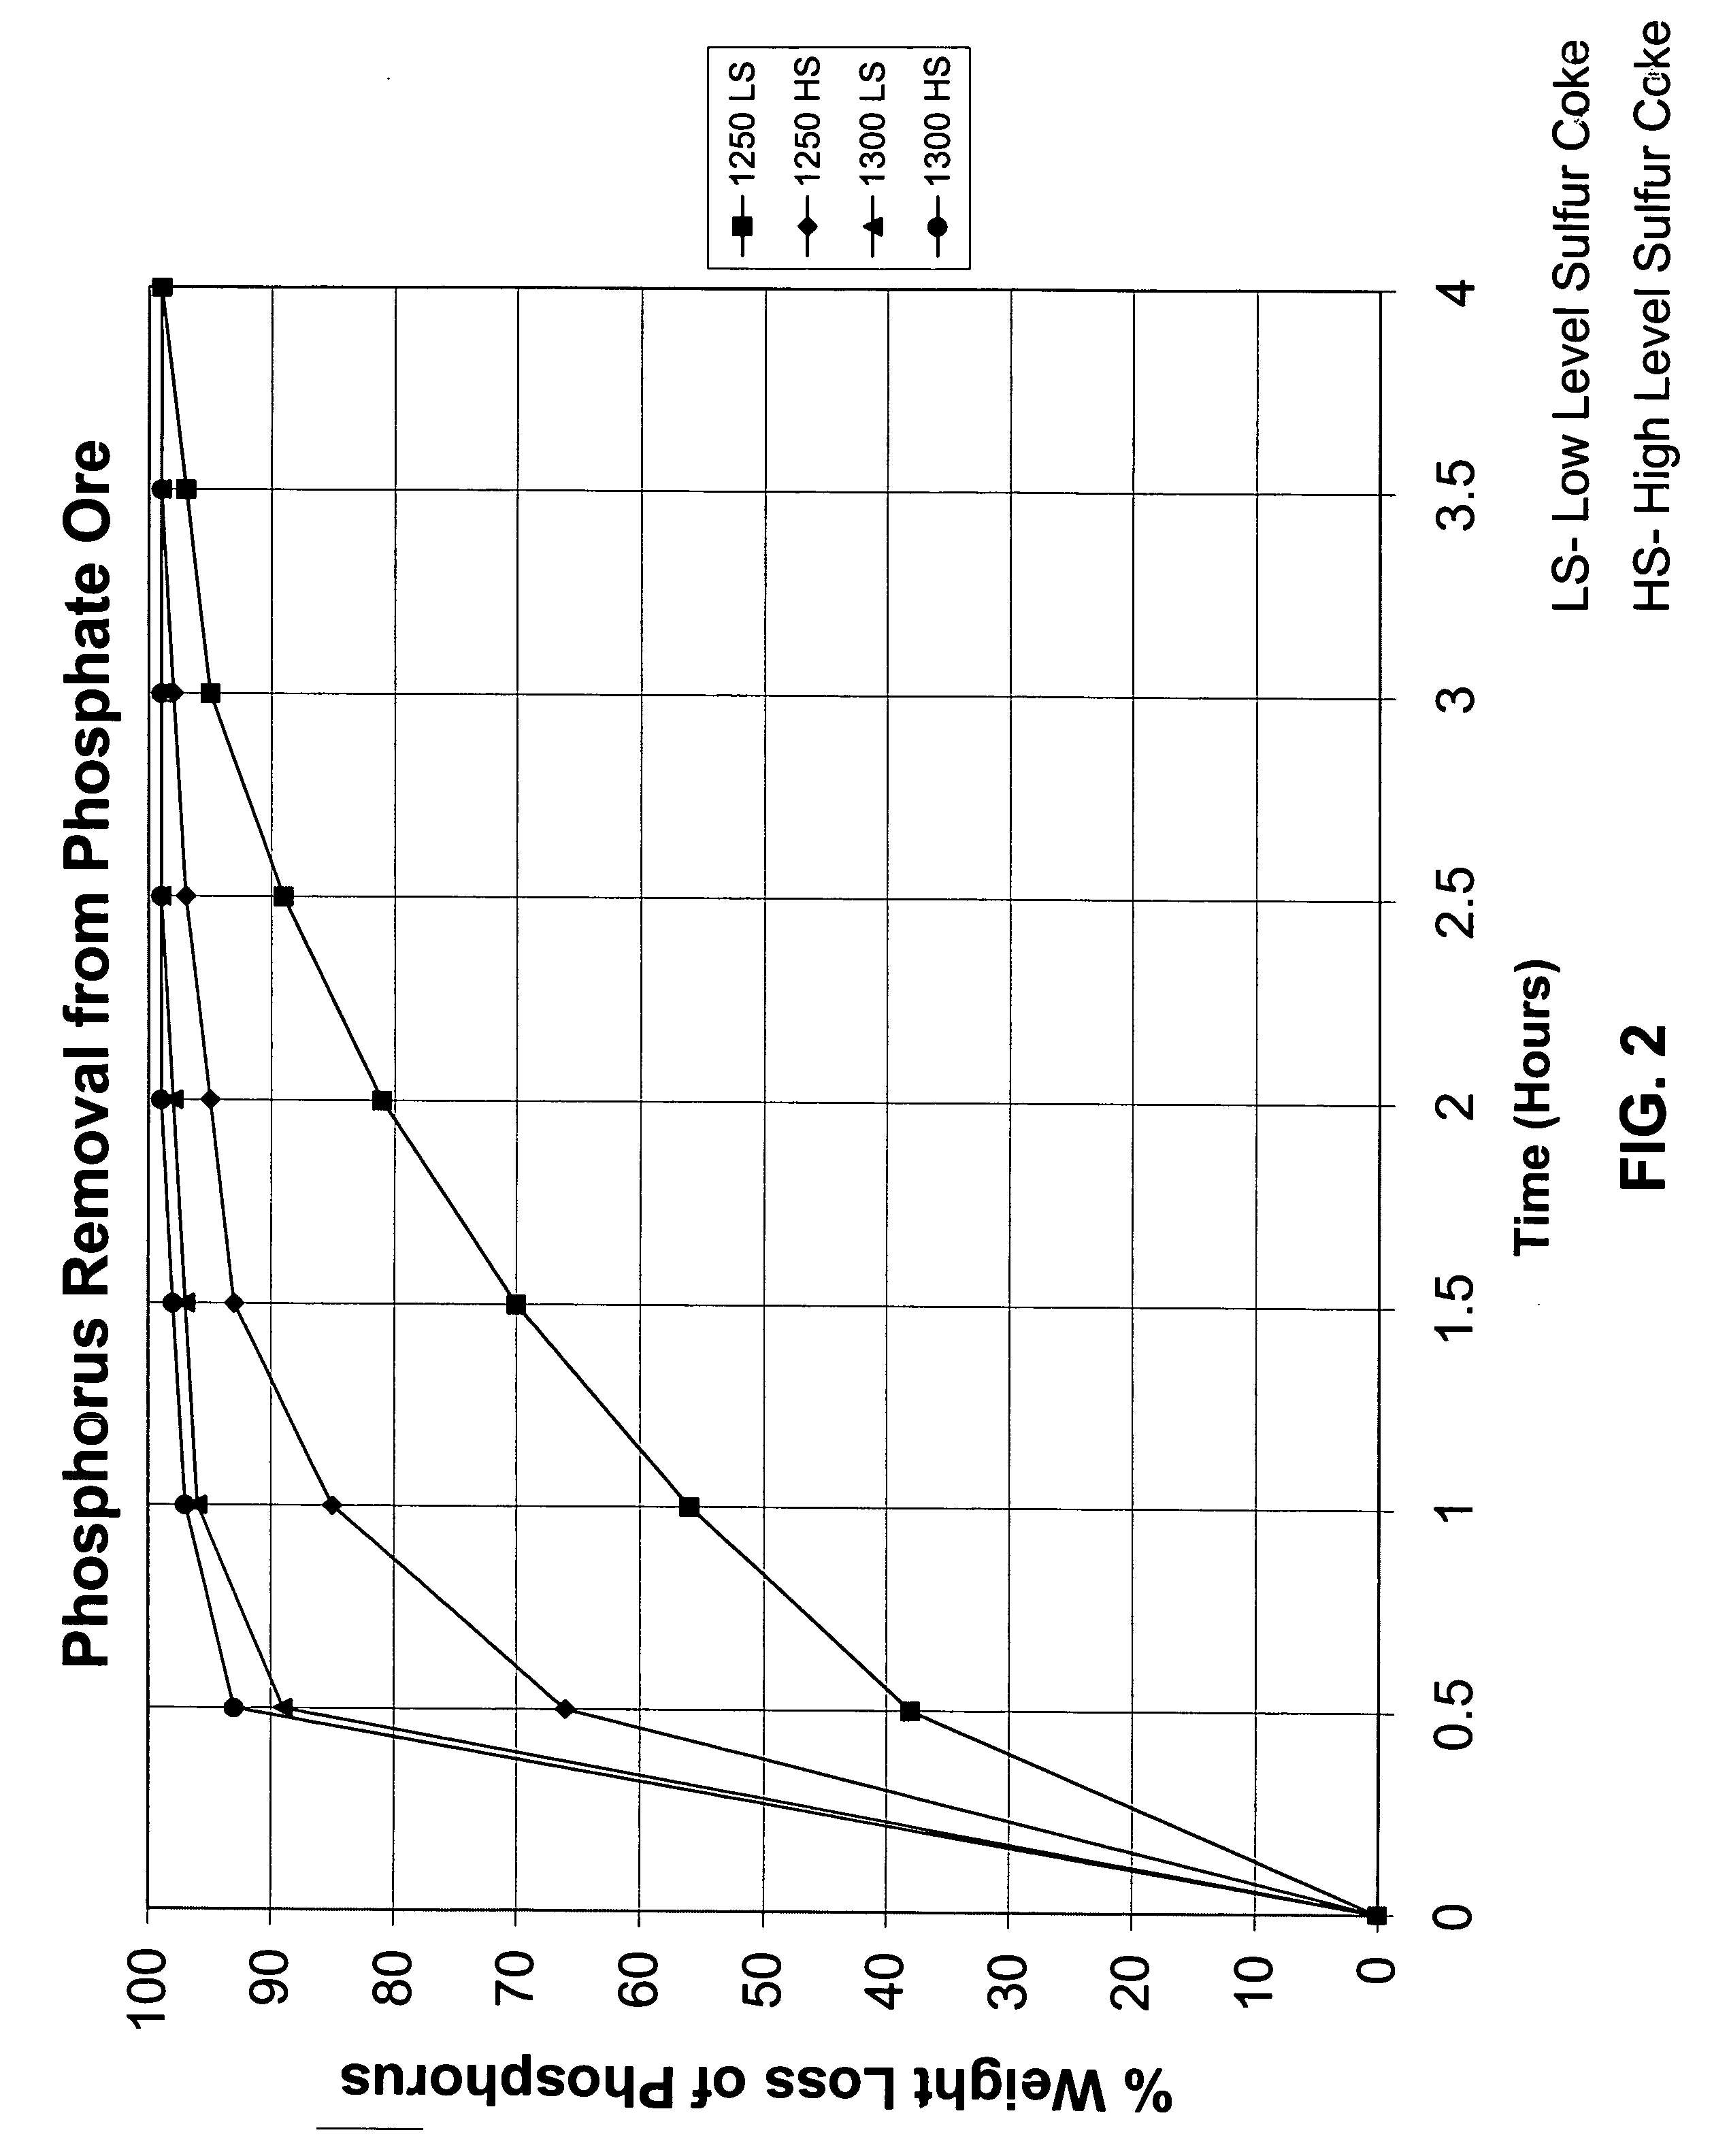 Method of forming phosphoric acid from phosphate ore